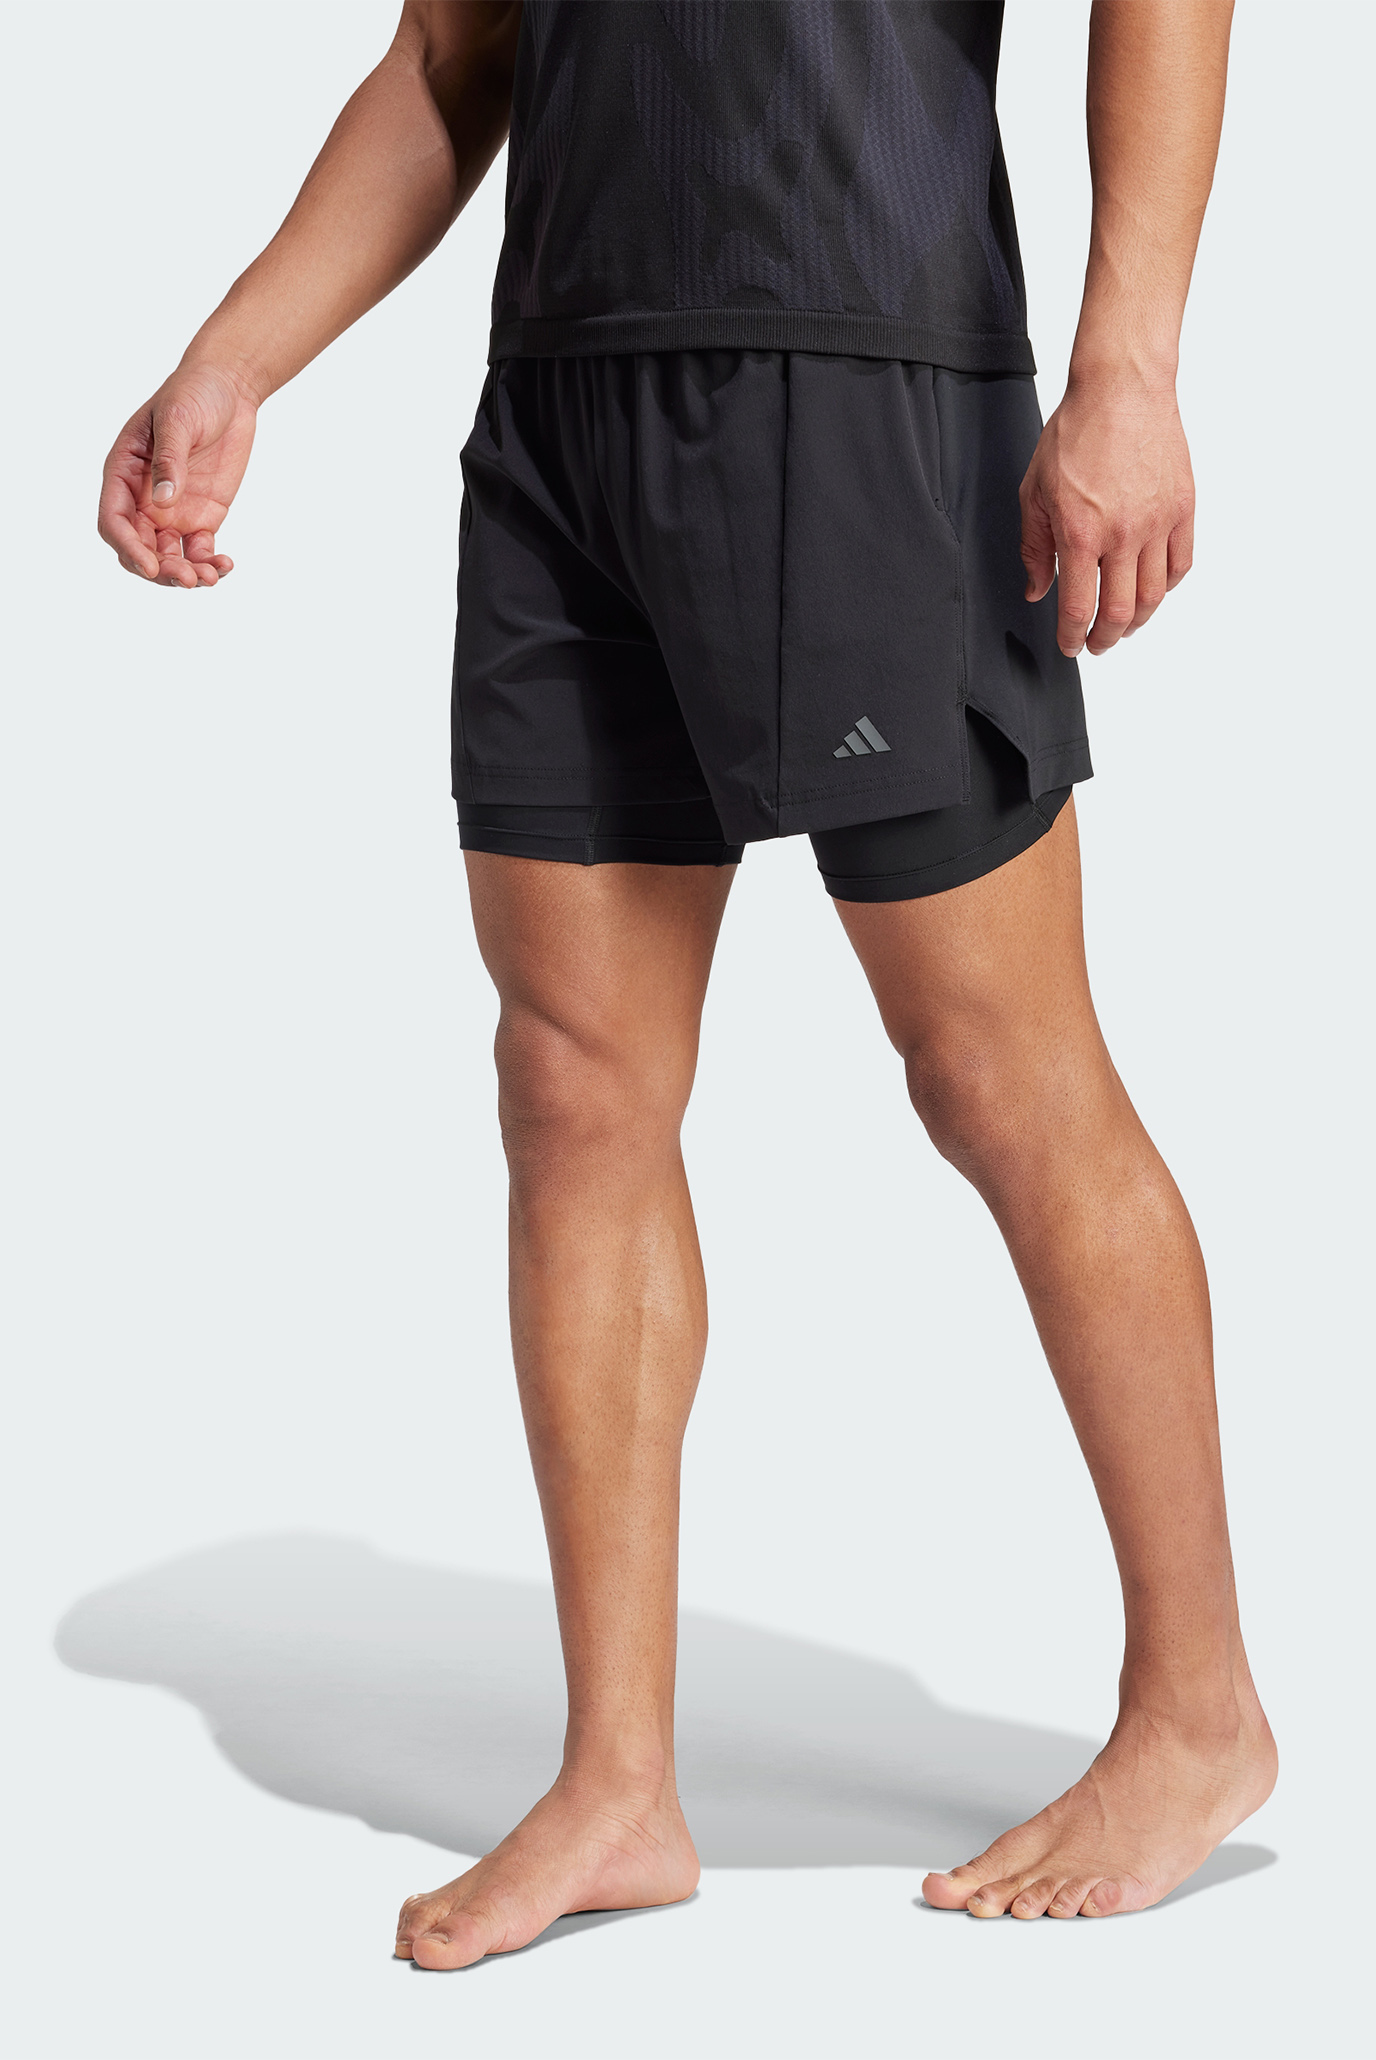 Мужские черные шорты Designed for Training Yoga Premium 2-in-1 1